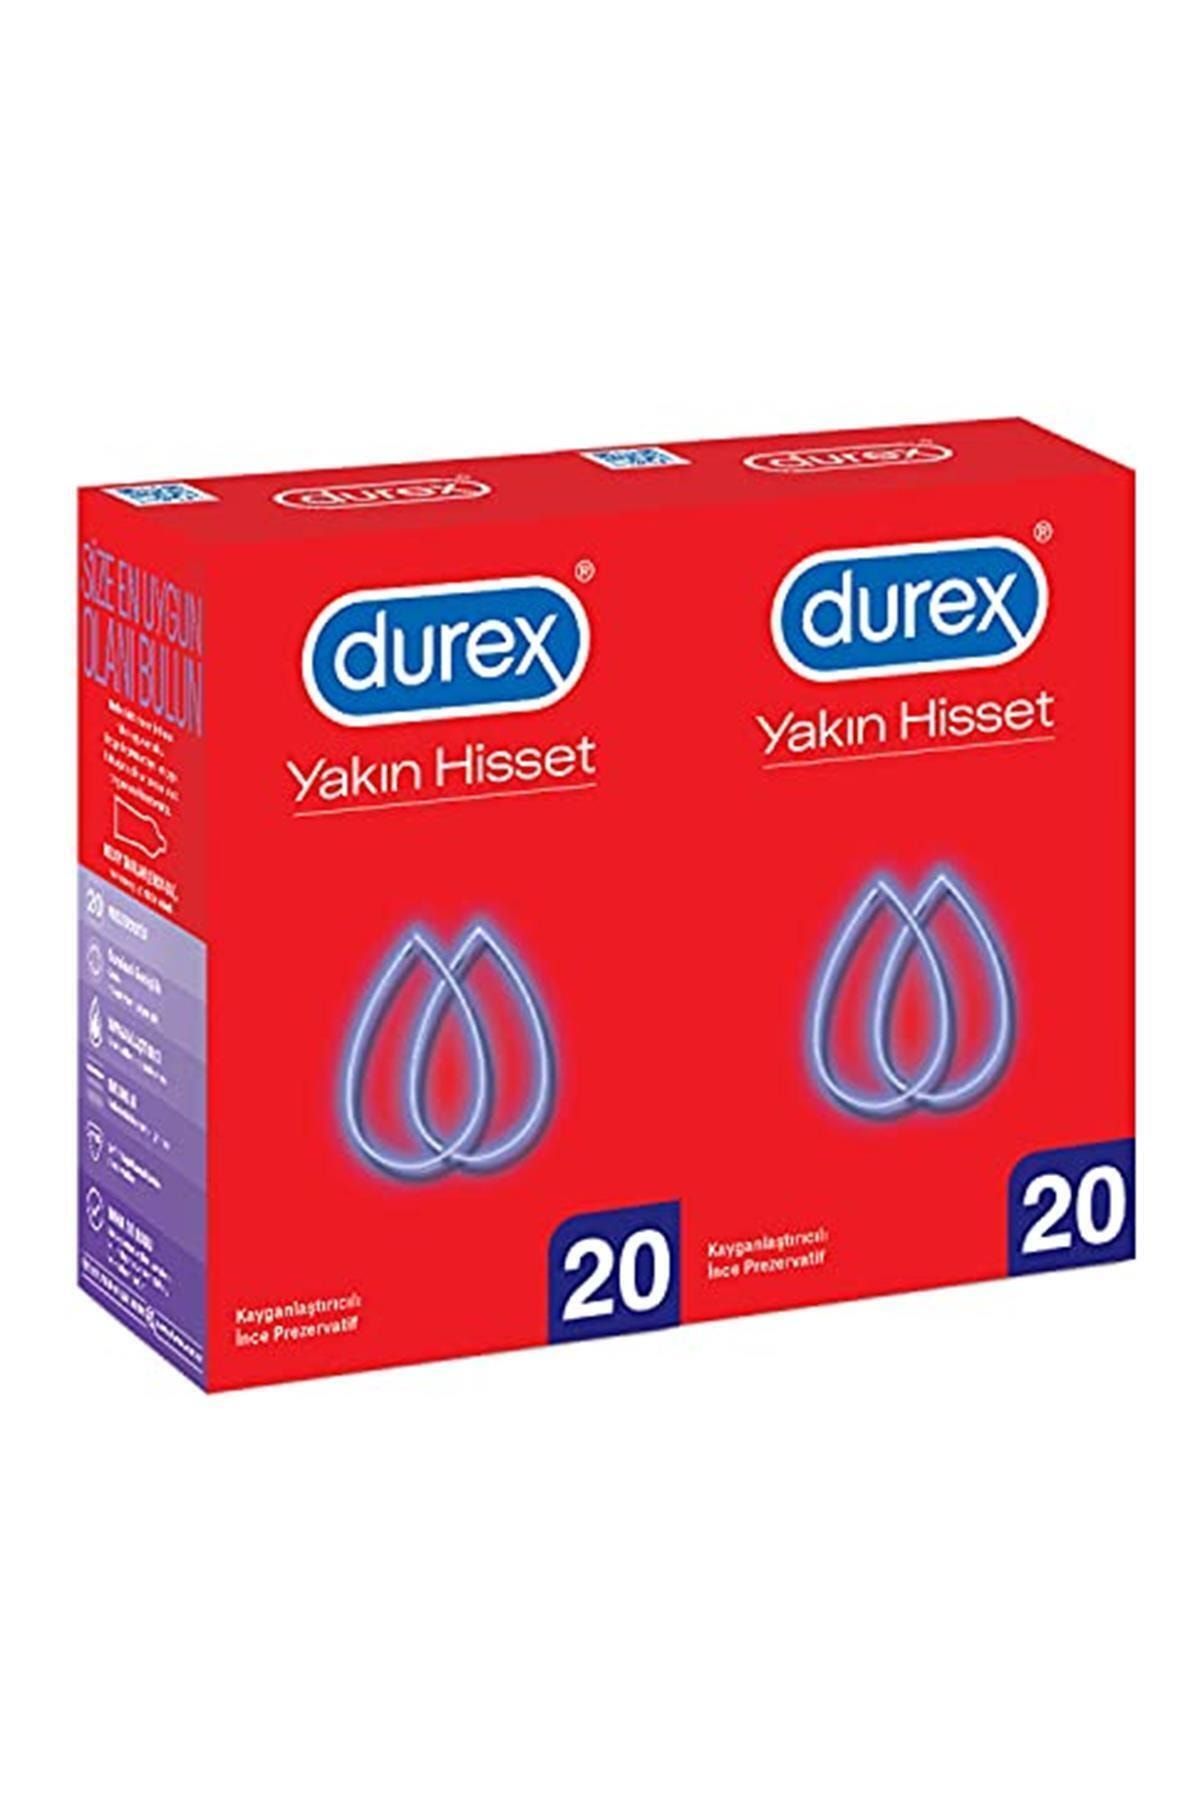 Durex Yakın Hisset Ince Prezervatif, 40'lı Ekonomik Avantaj Paket